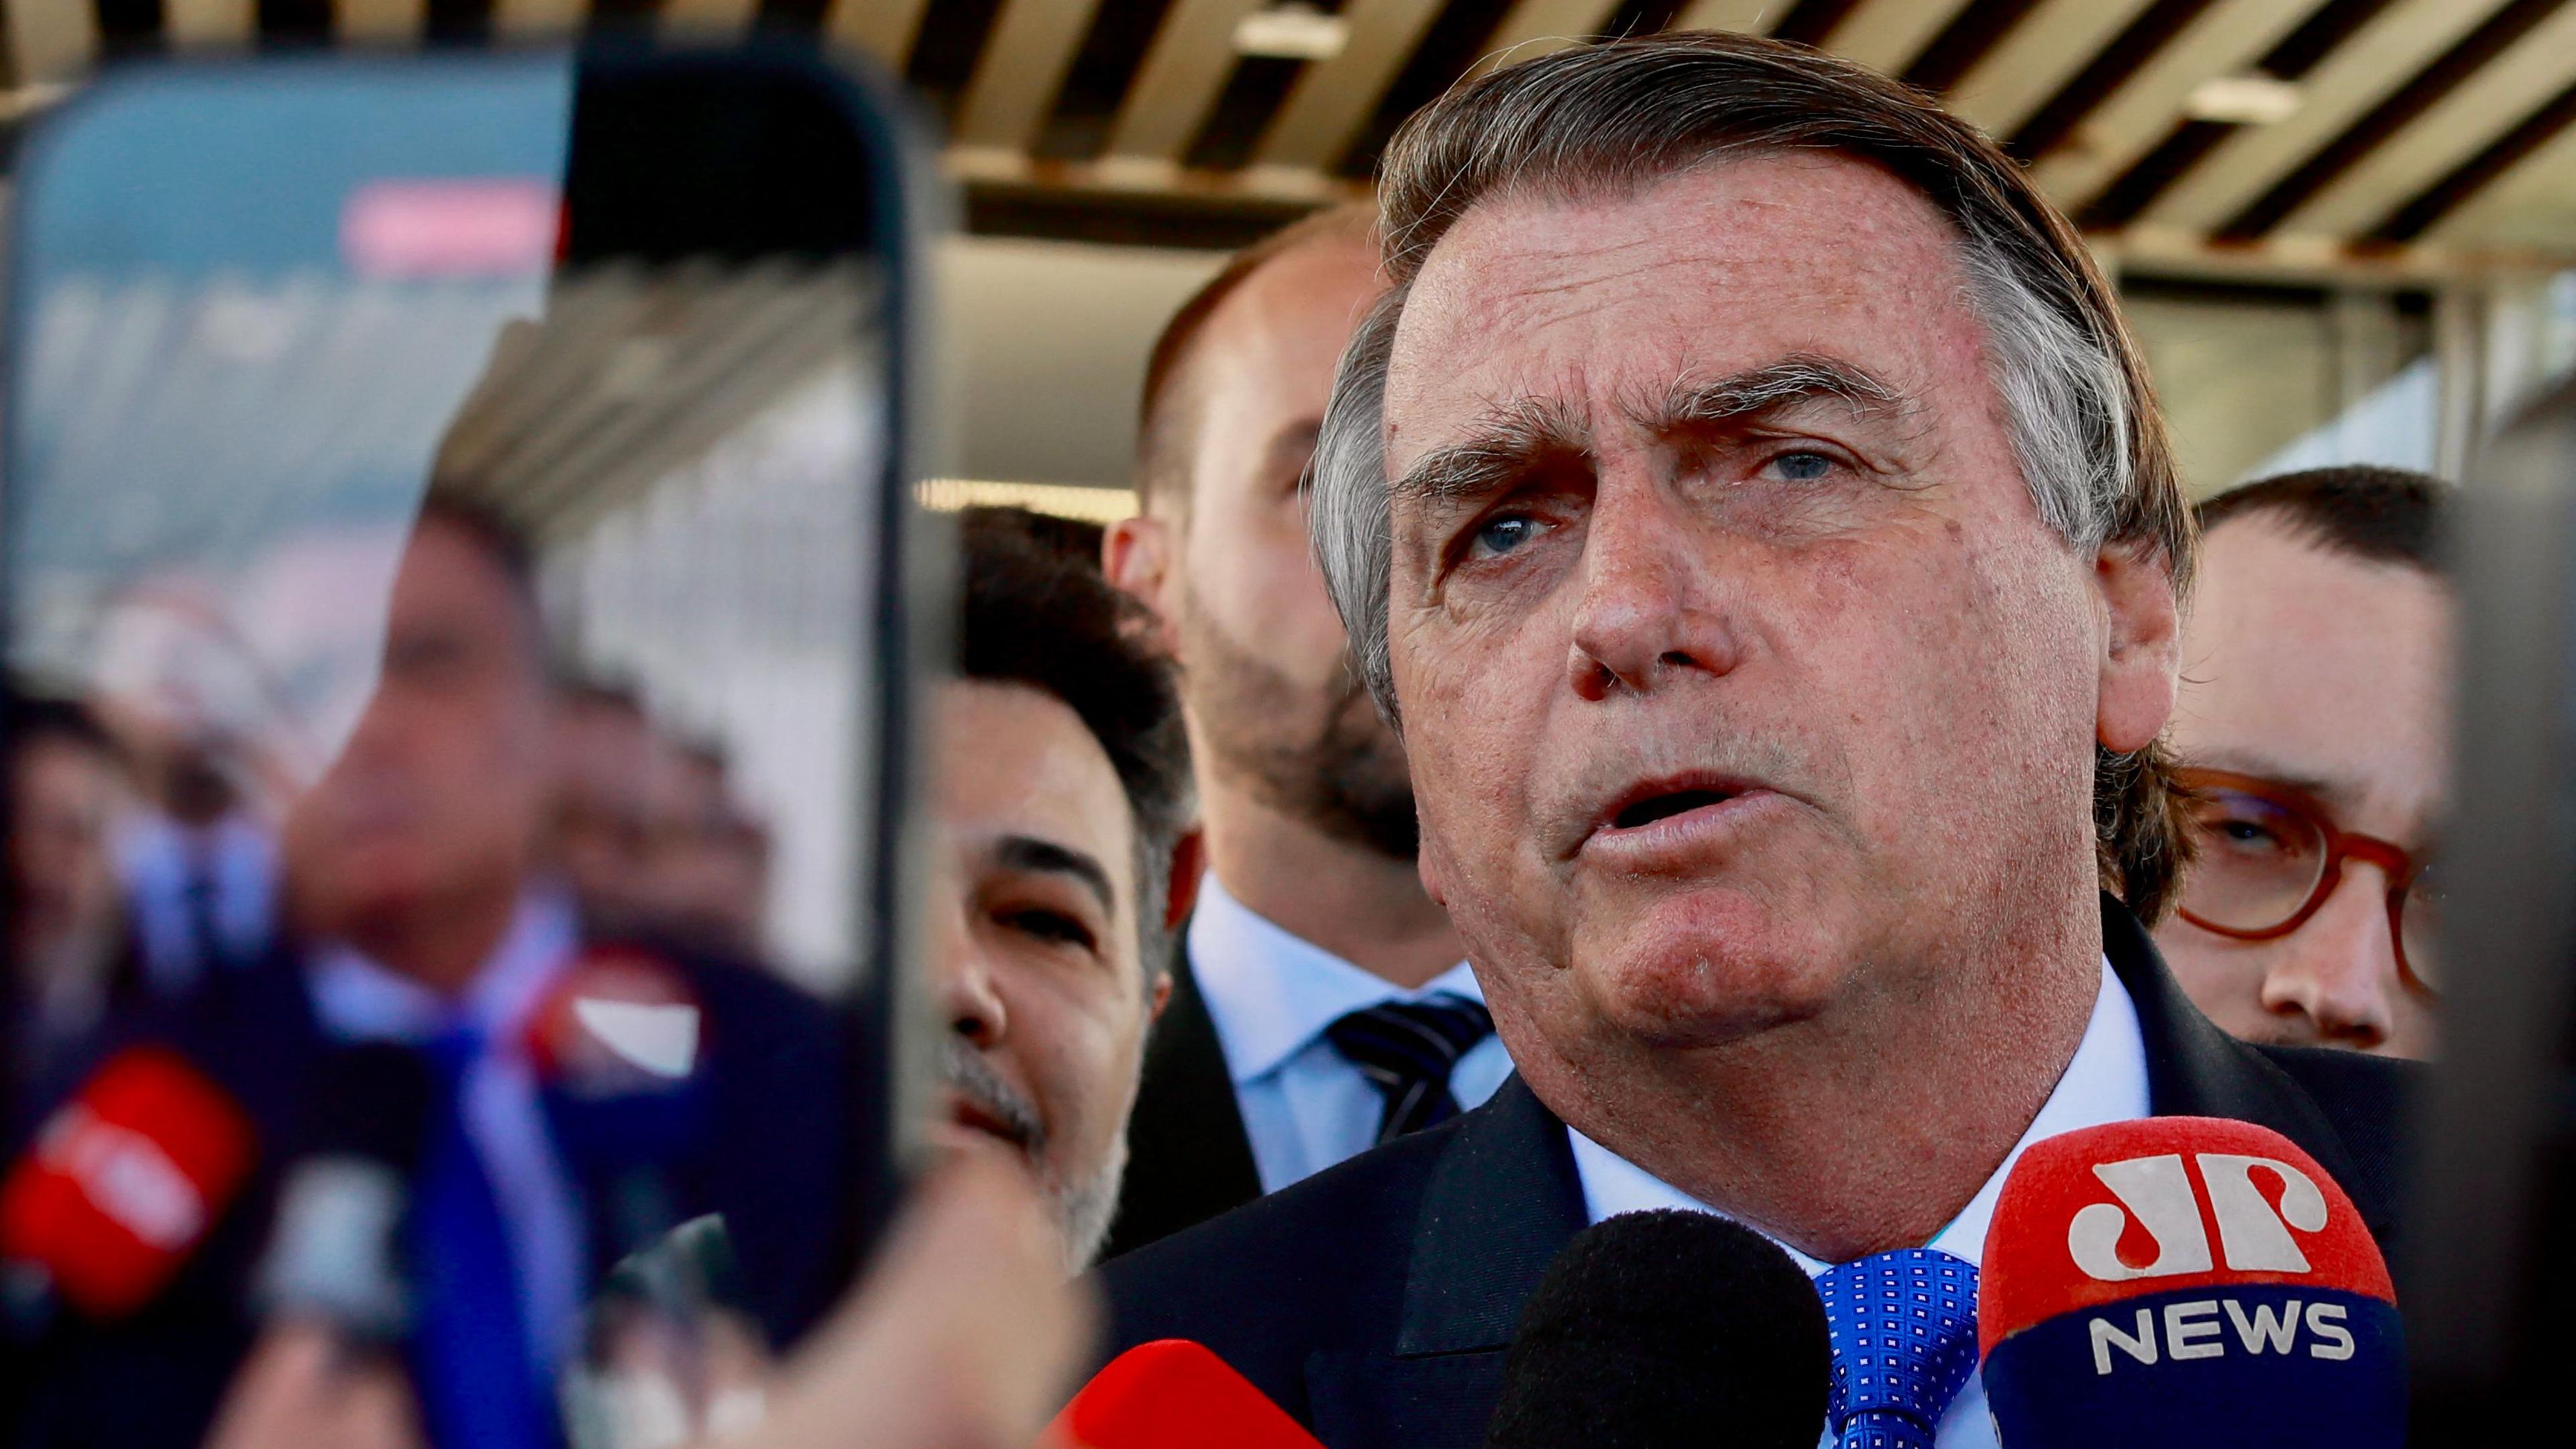 Análise: Por que Bolsonaro pode se tornar inelegível?